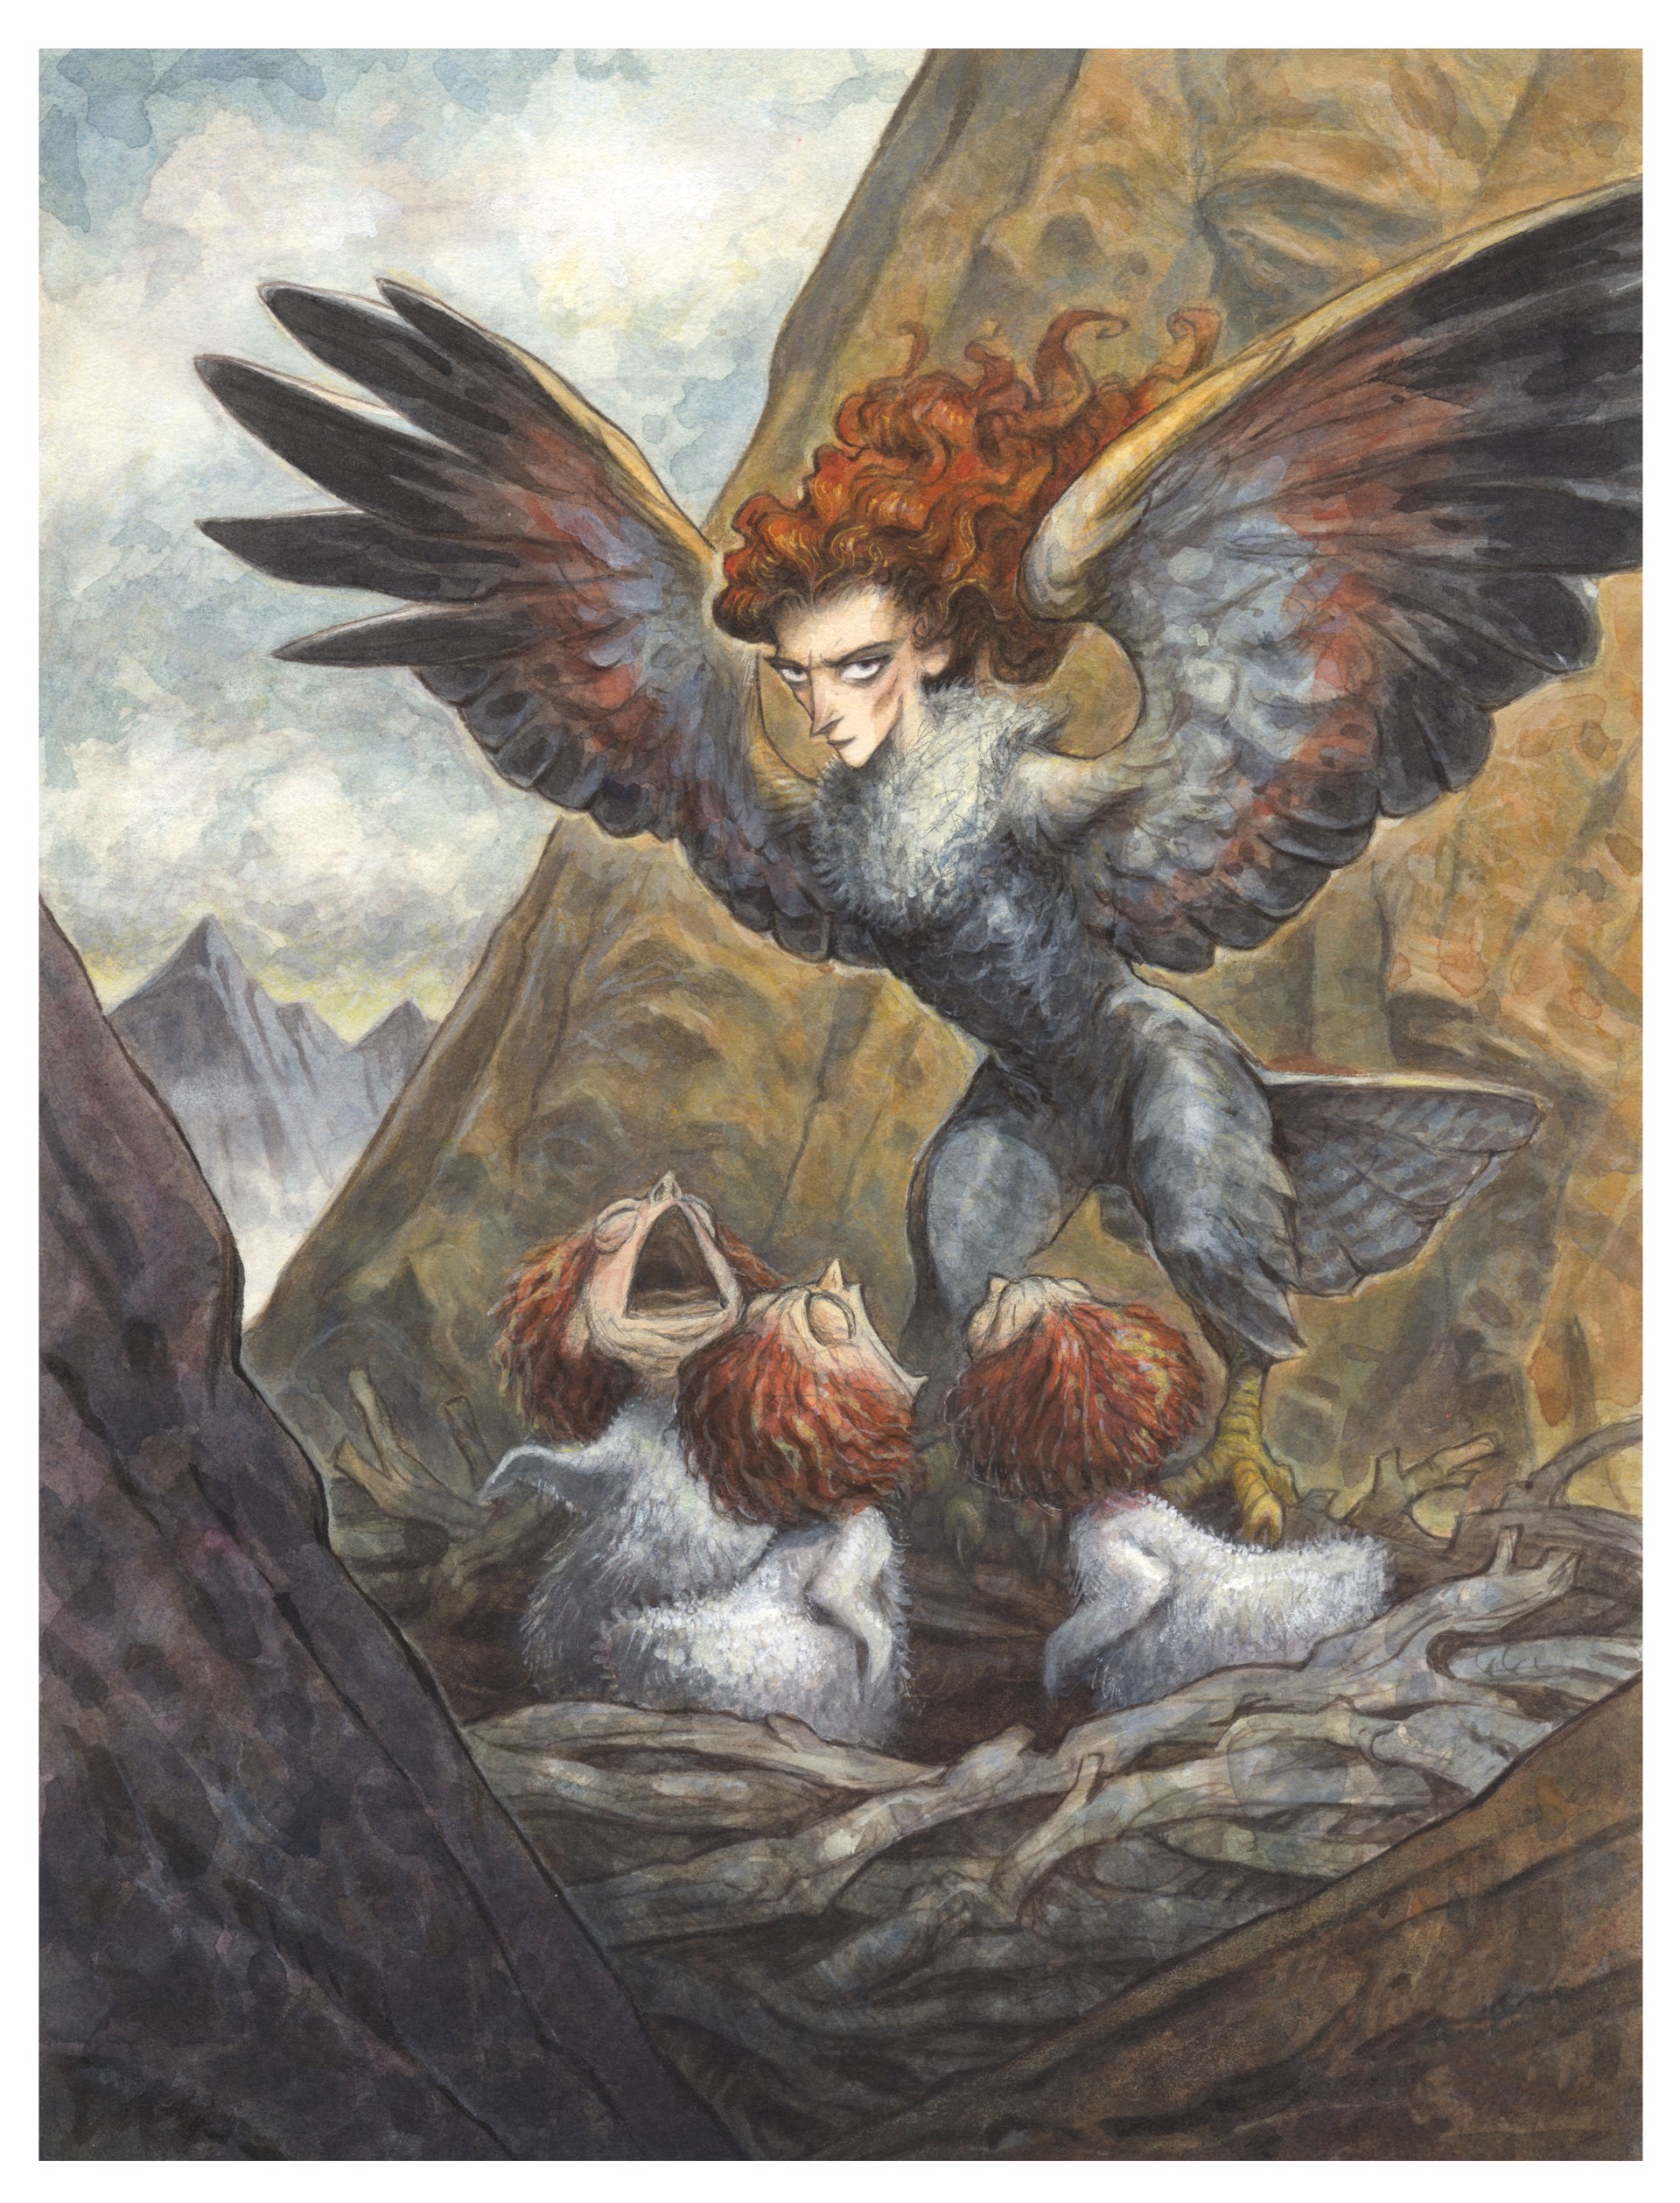 Harpy "Nestlings" by Peter de Sève